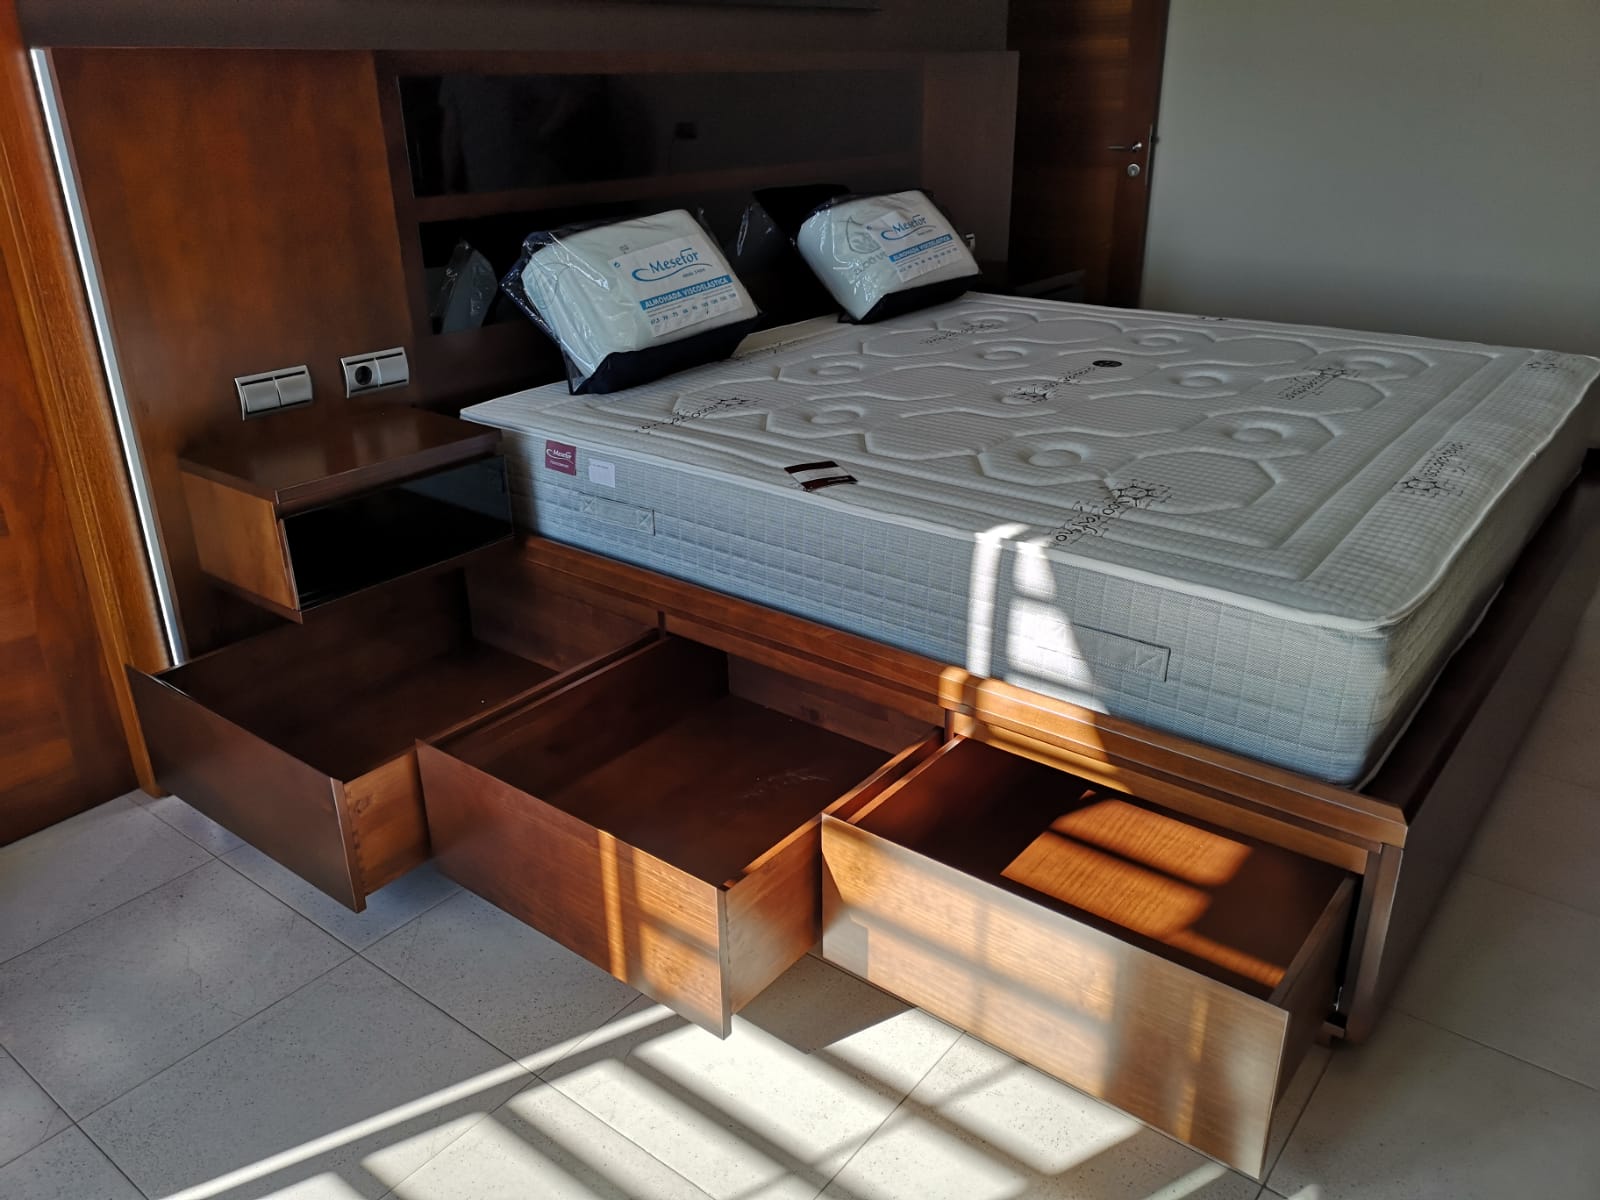 Habitación con extra de almacenaje: cajones ocultos bajo la cama